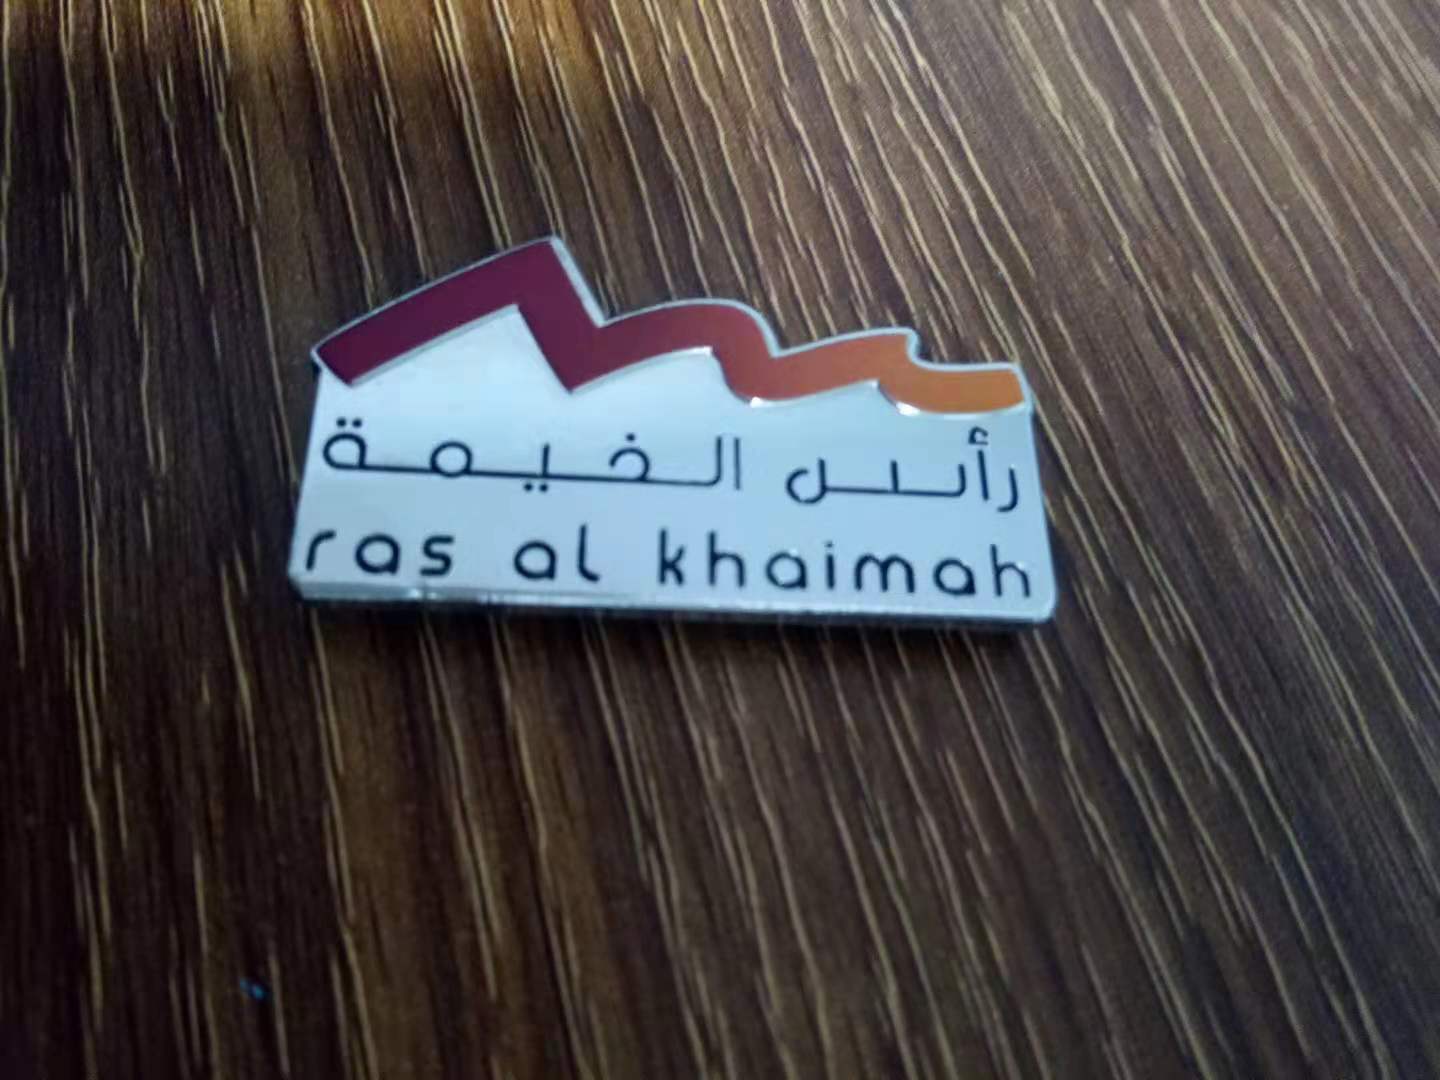 Custom UAE metal enamel magnetic badge with printing